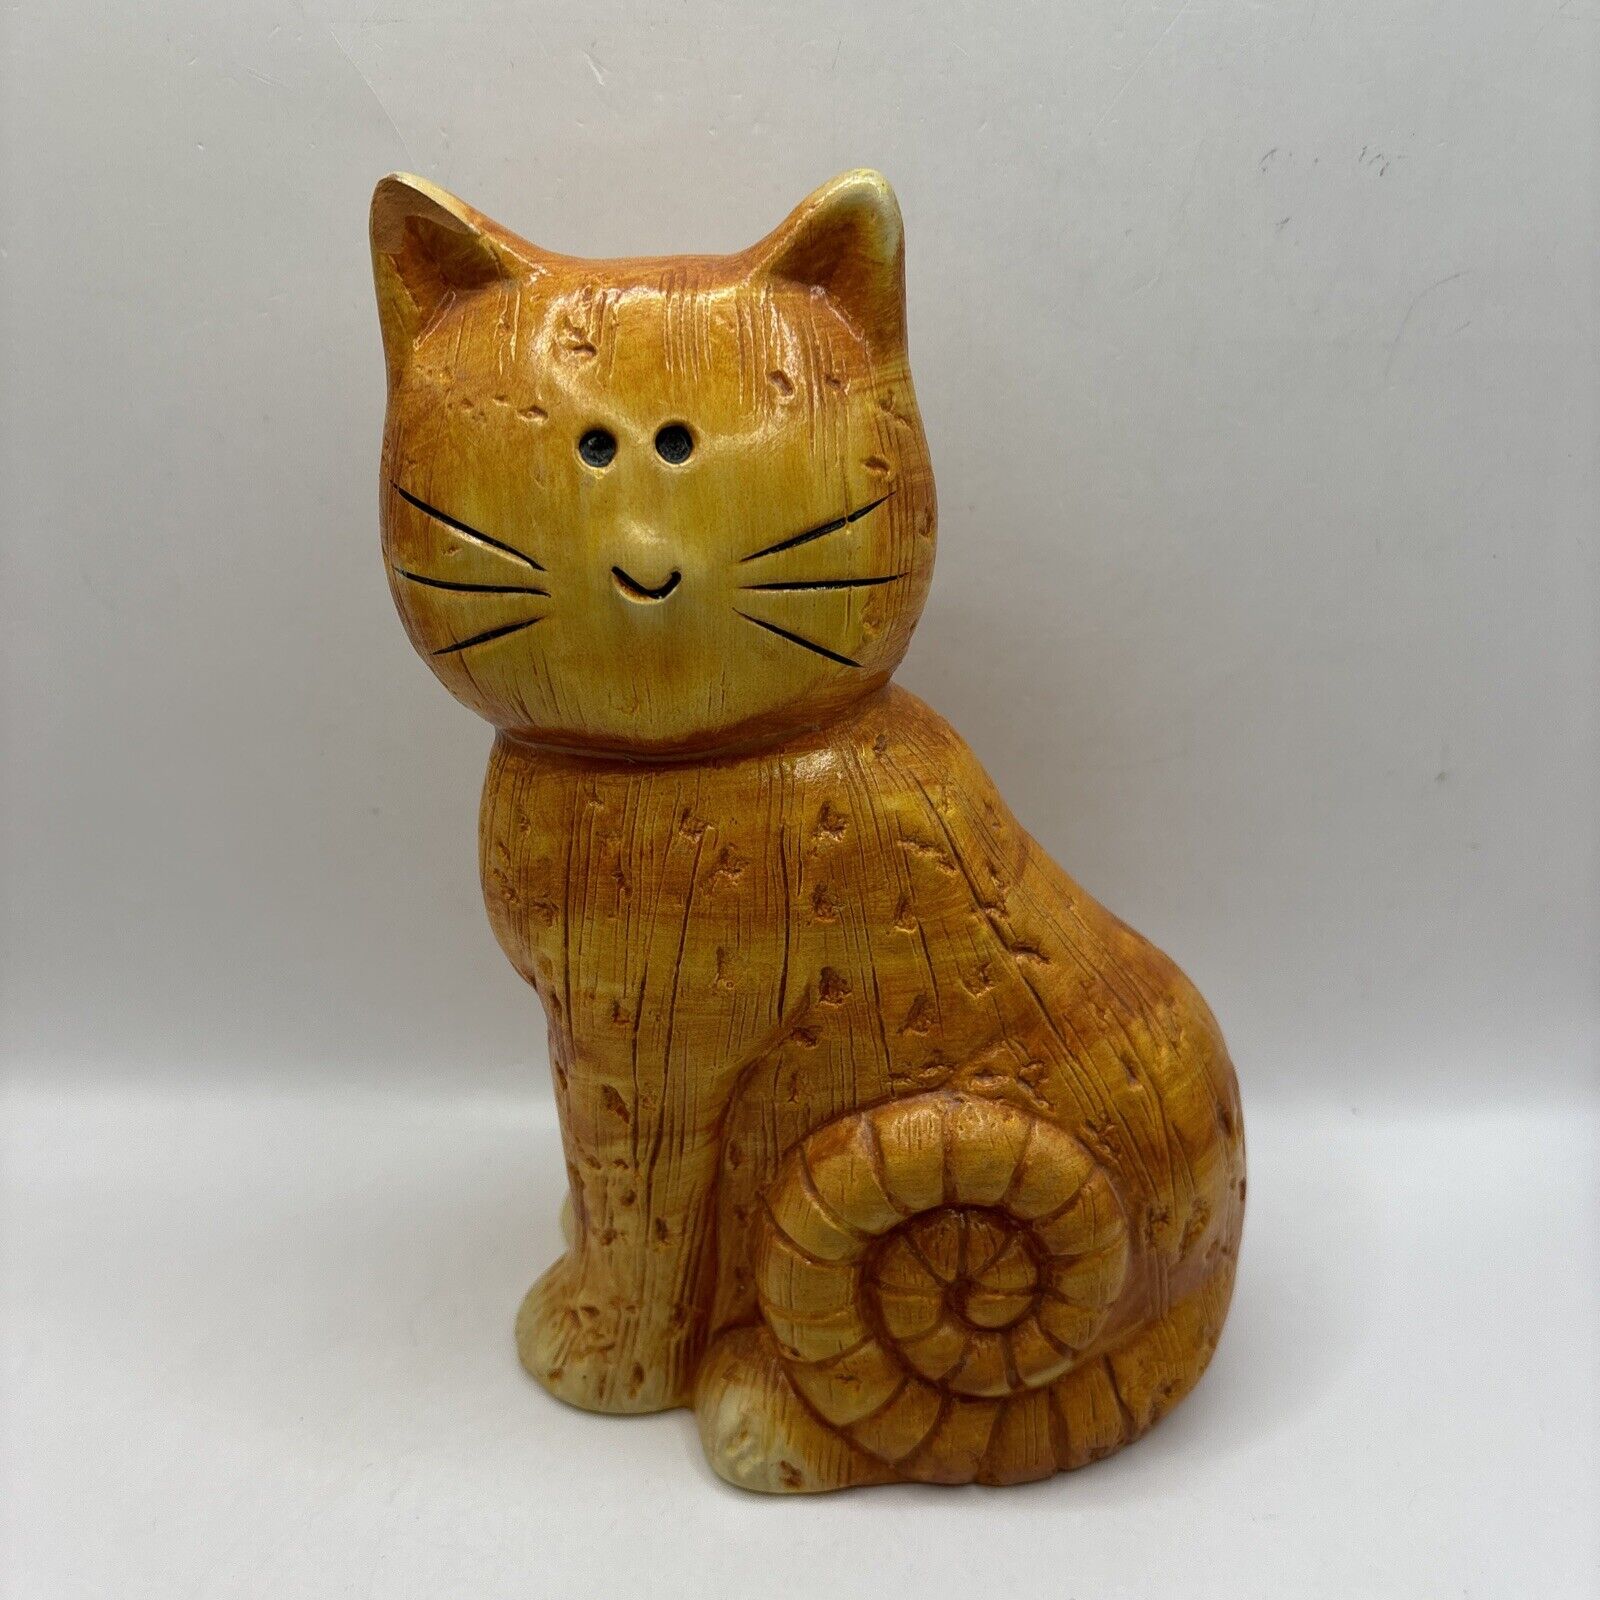  Vintage Sitting Orange Cat Ceramic 